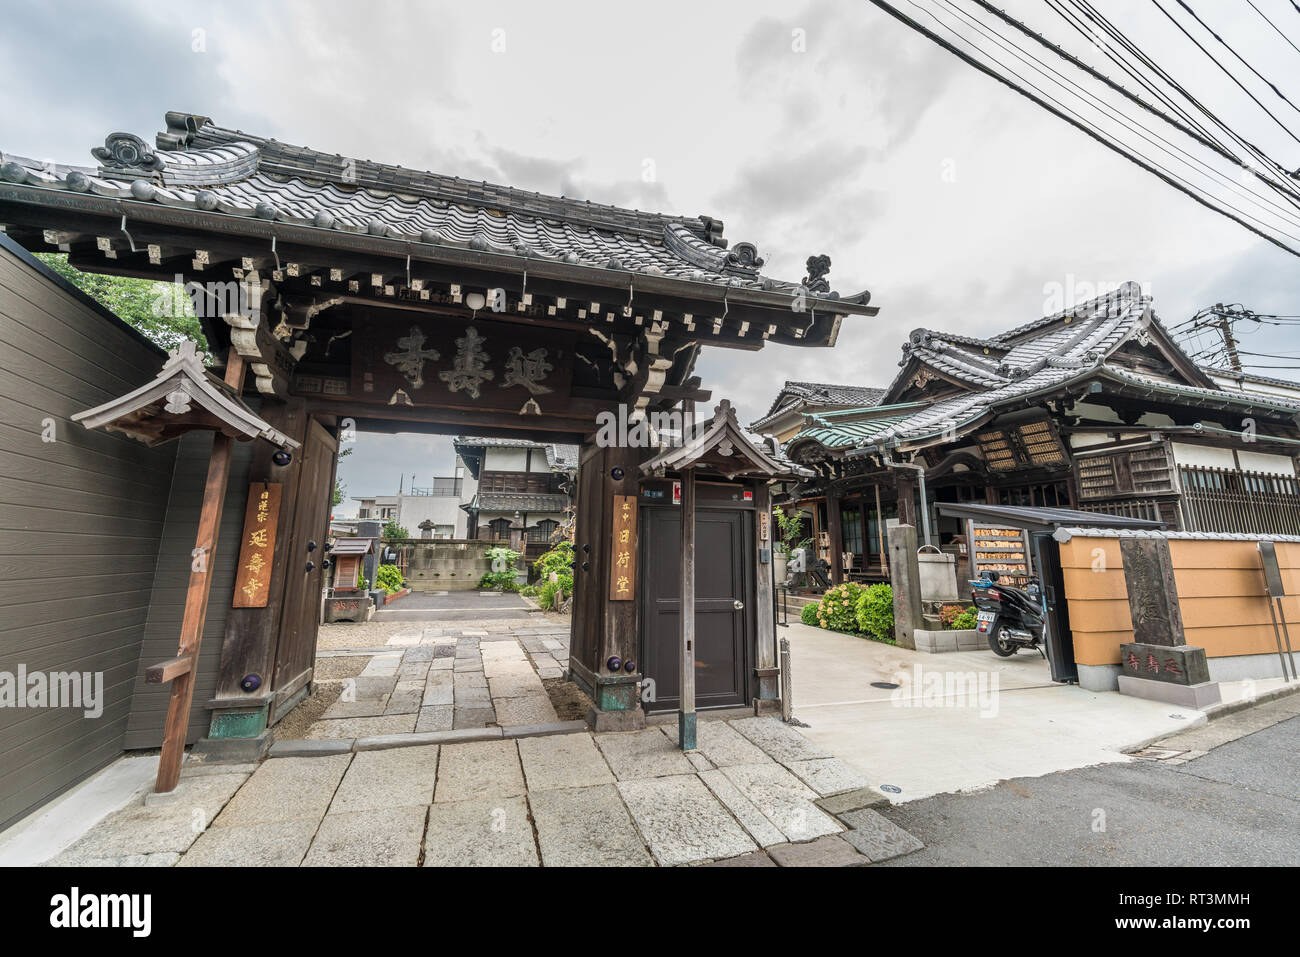 Taito Bezirk, Tokyo, Japan - 18. August 2017: Enjuji Nichiren Schule buddhistischen Tempel, schreibt ein Mönch aus dem 14. Jahrhundert Nichika, Schutz der Wanderer und runn Stockfoto